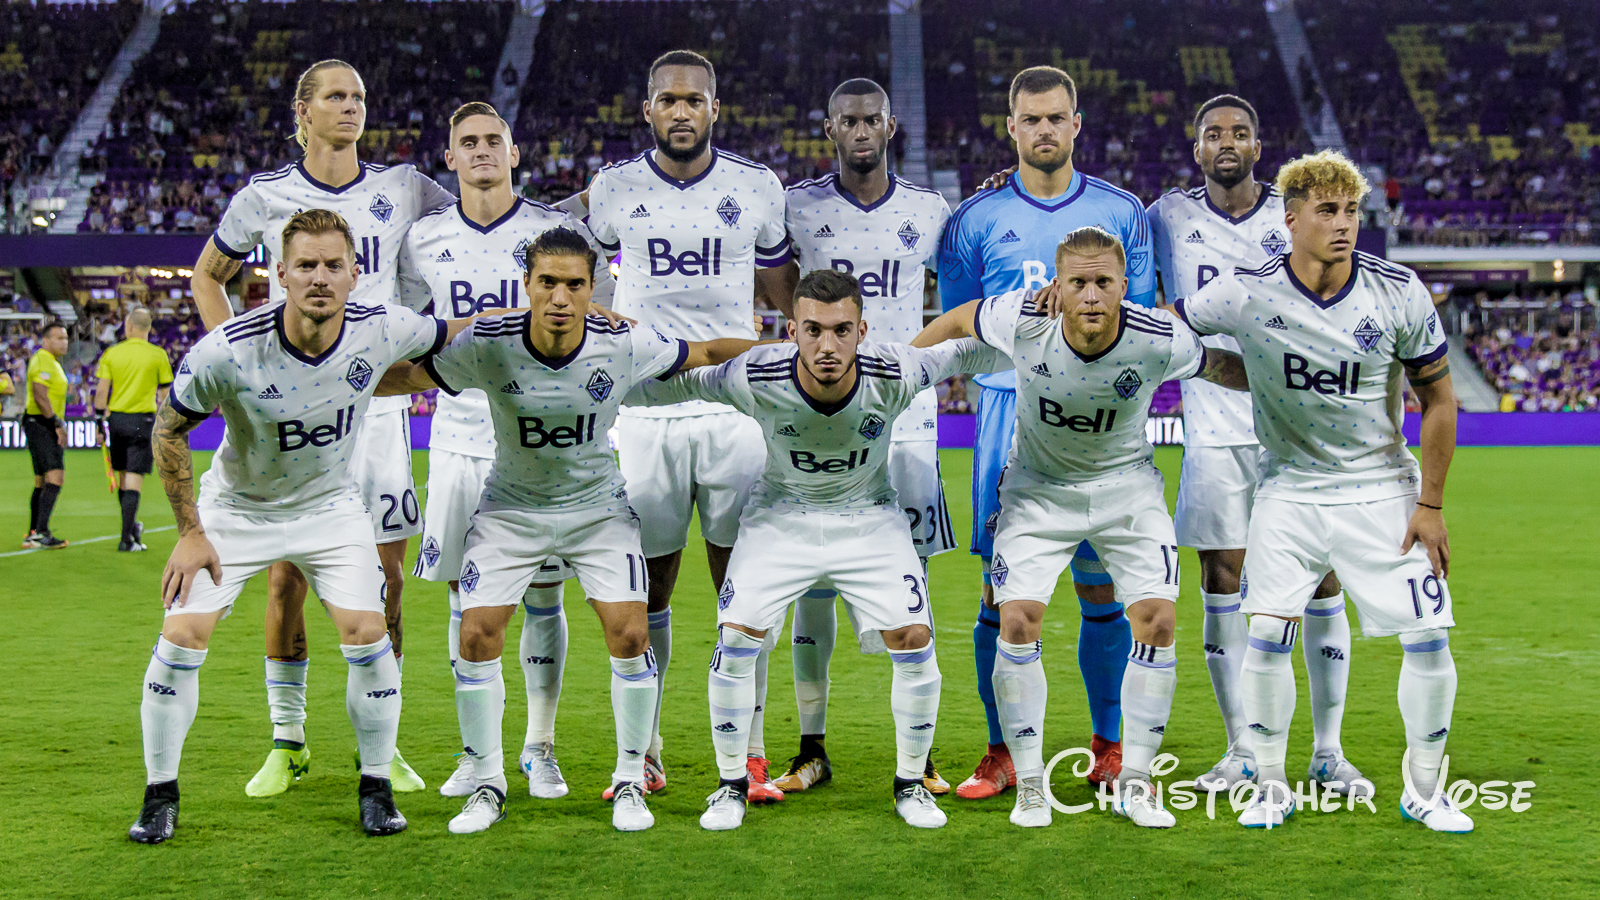 2017-08-26 Vancouver Whitecaps FC Team Photo.jpg